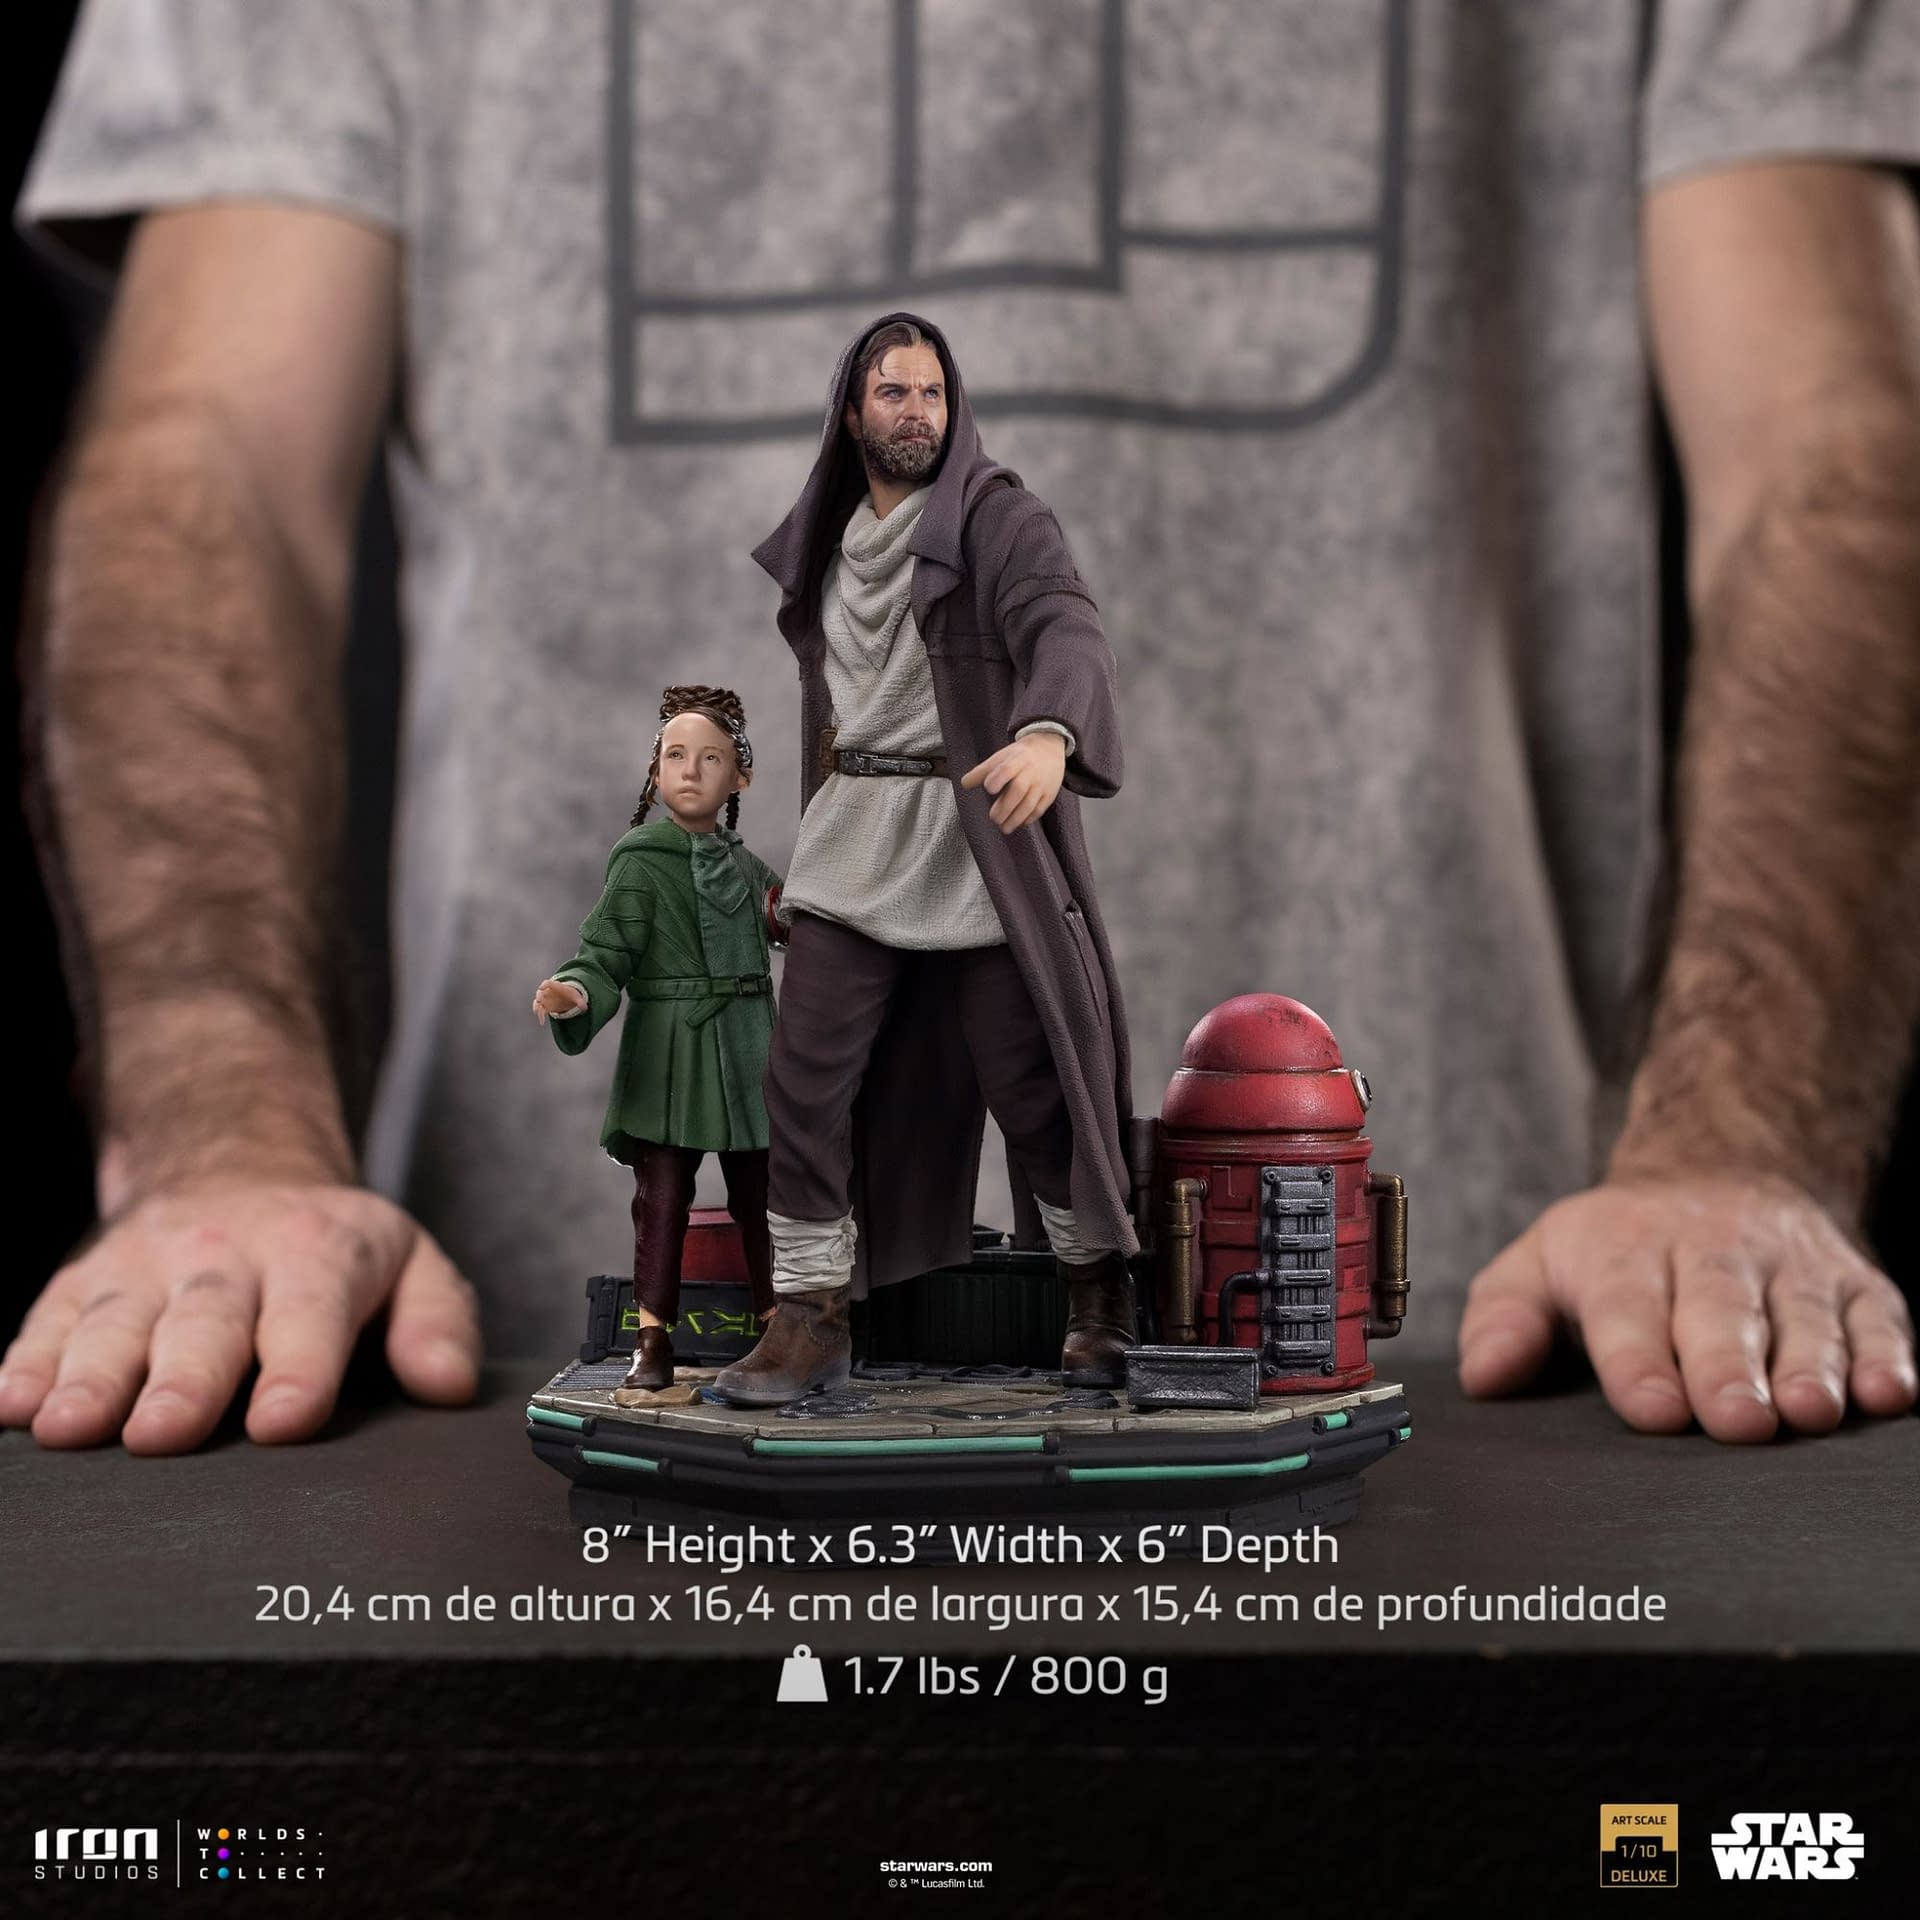 Obi-Wan Kenobi Saves Princess Leia with New Iron Studios Statue 